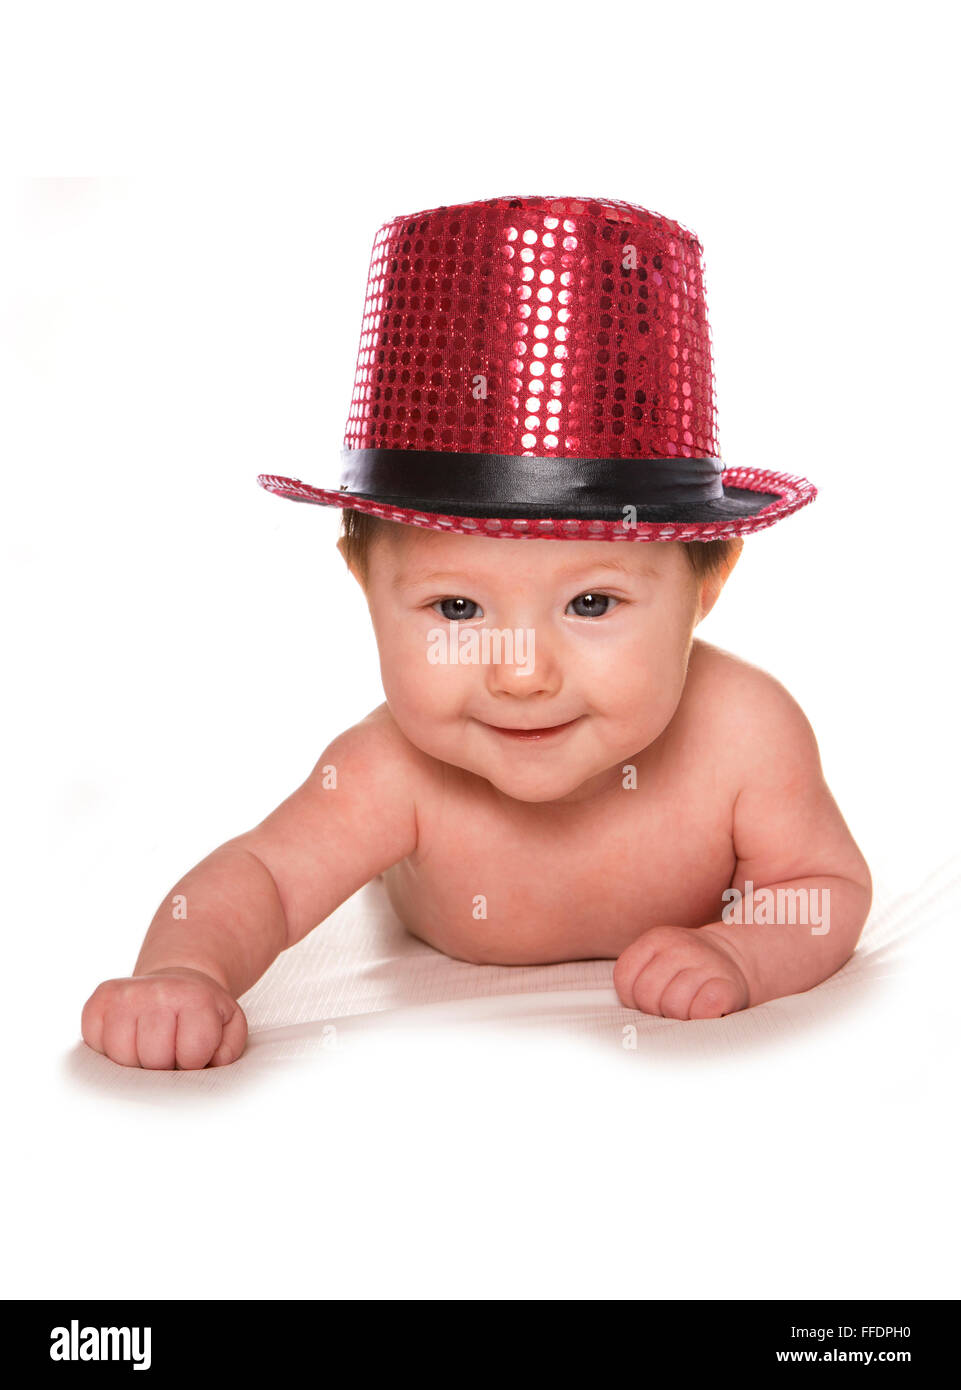 Bébé de trois mois portant chapeau cabaret rouge dentelle Banque D'Images